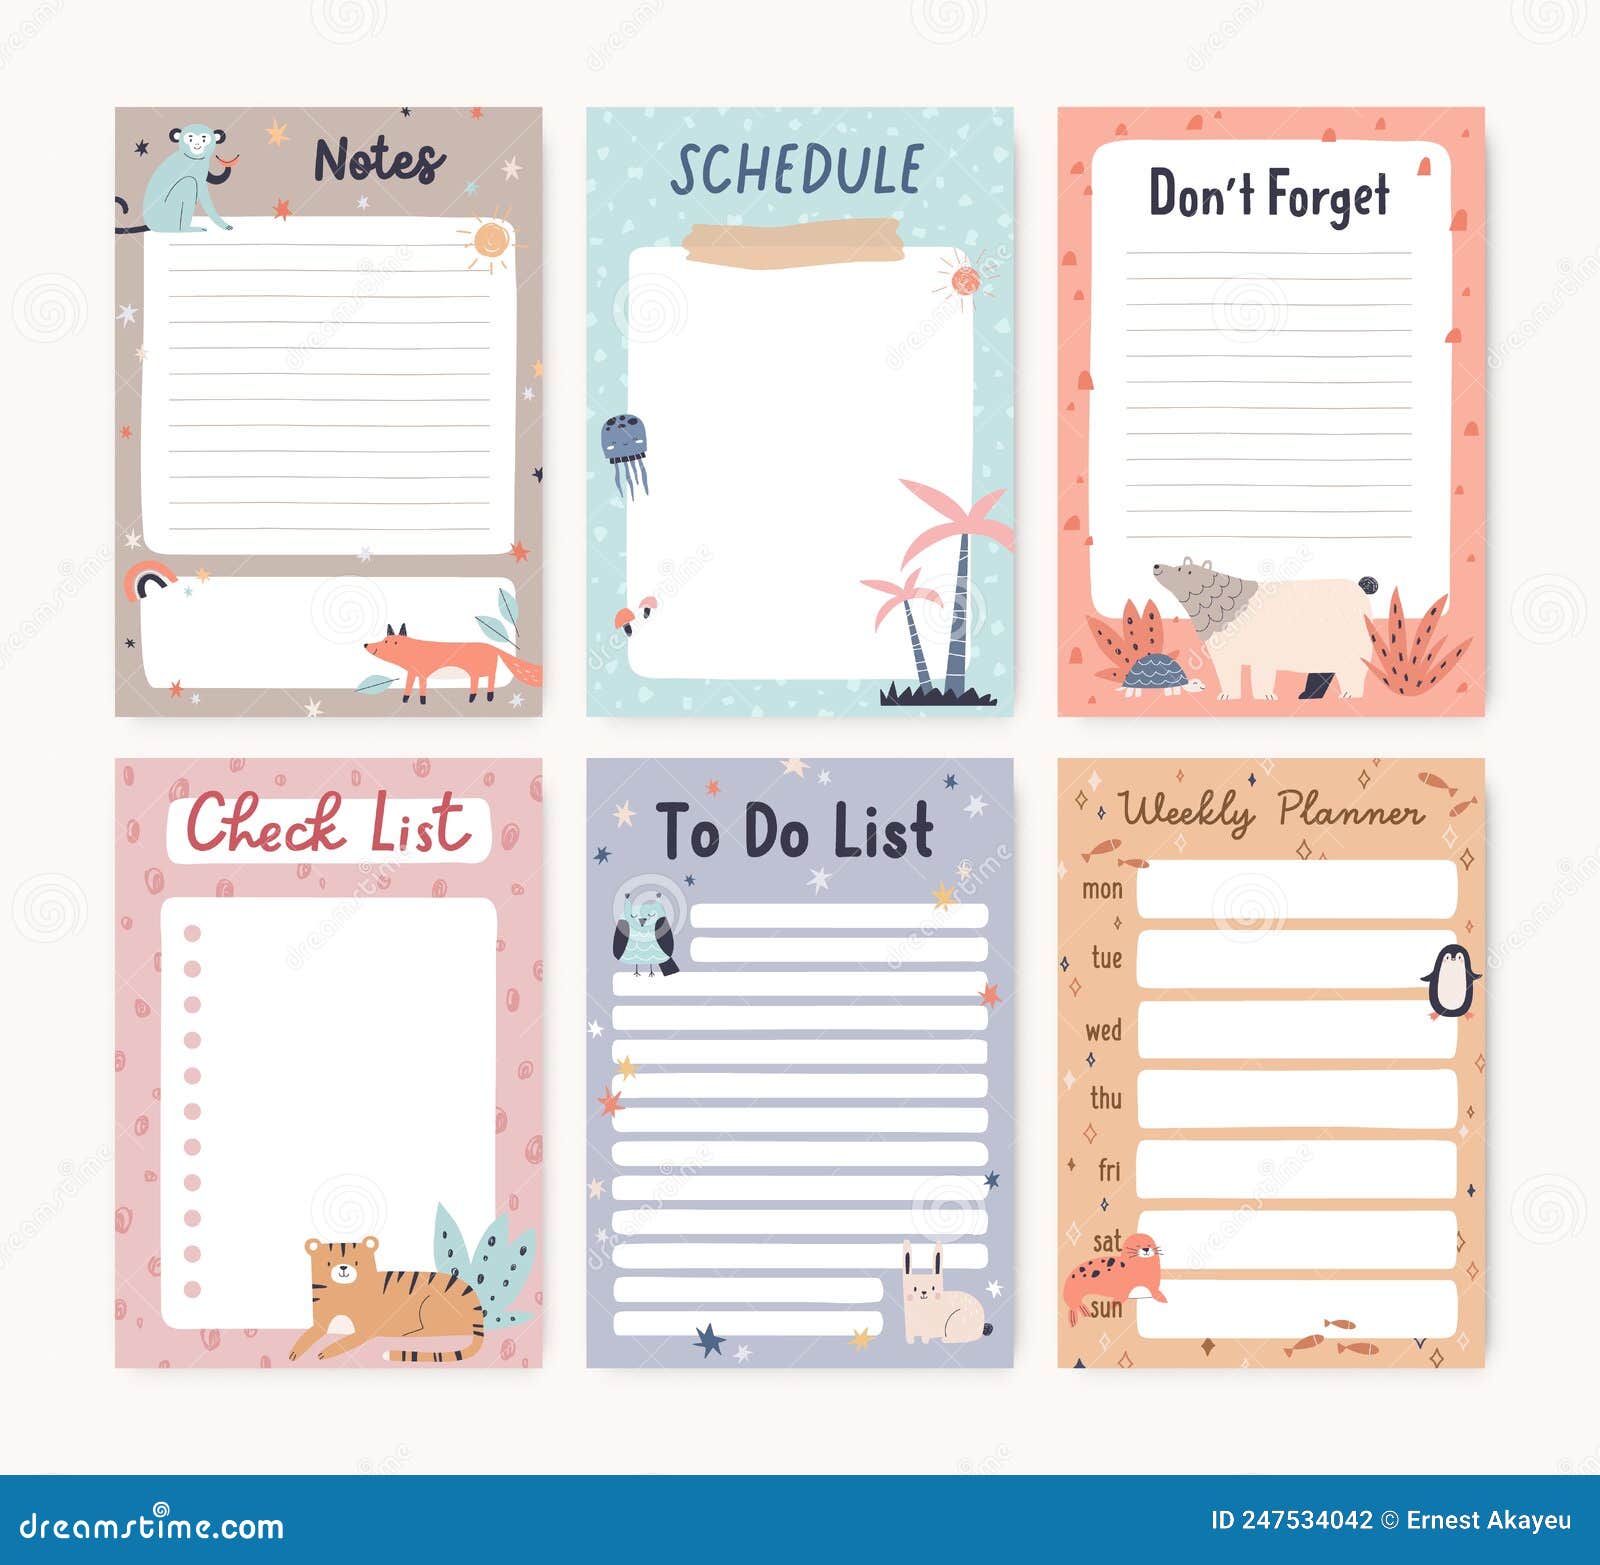 To Do Liste: Carnet de notes, Planning des tâches quotidiennes